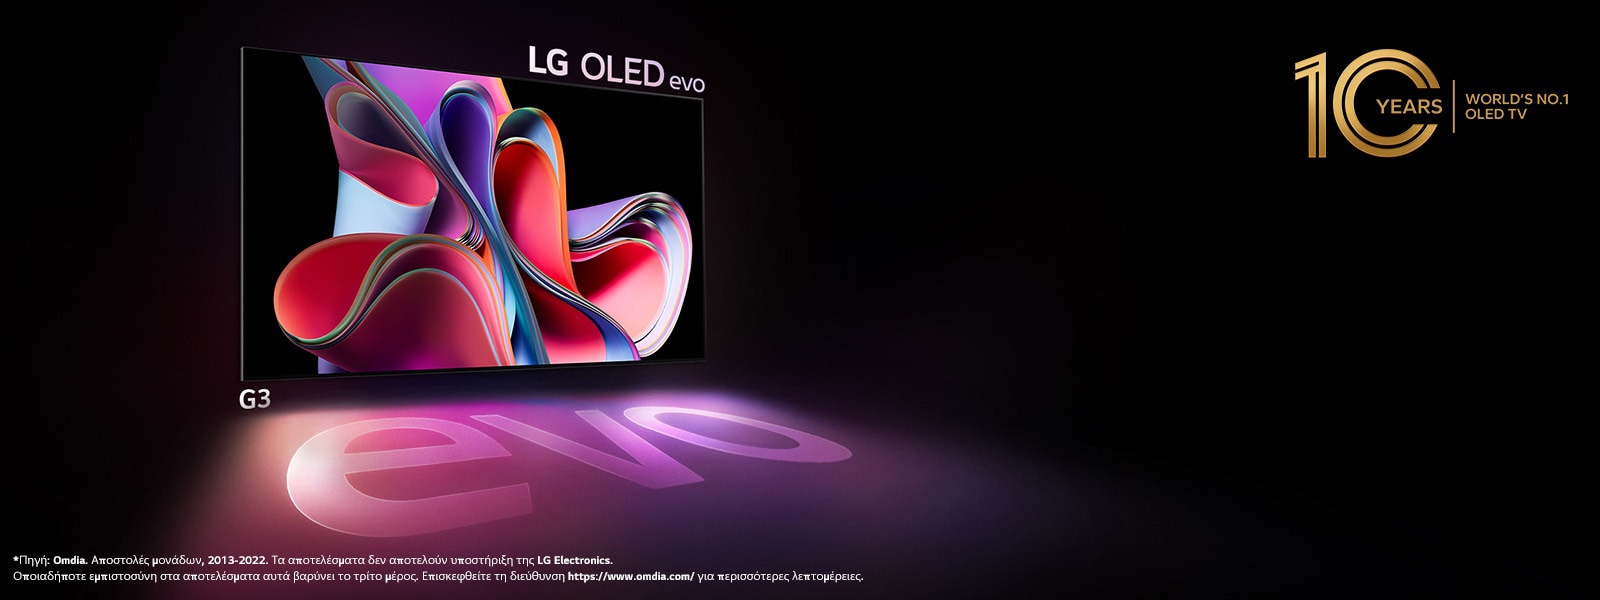 Η LG OLED G3 evo λάμπει έντονα σε έναν σκοτεινό χώρο. Και πάνω δεξιά, υπάρχει ένα λογότυπο για τον εορτασμό της 10ης επετείου της OLED.